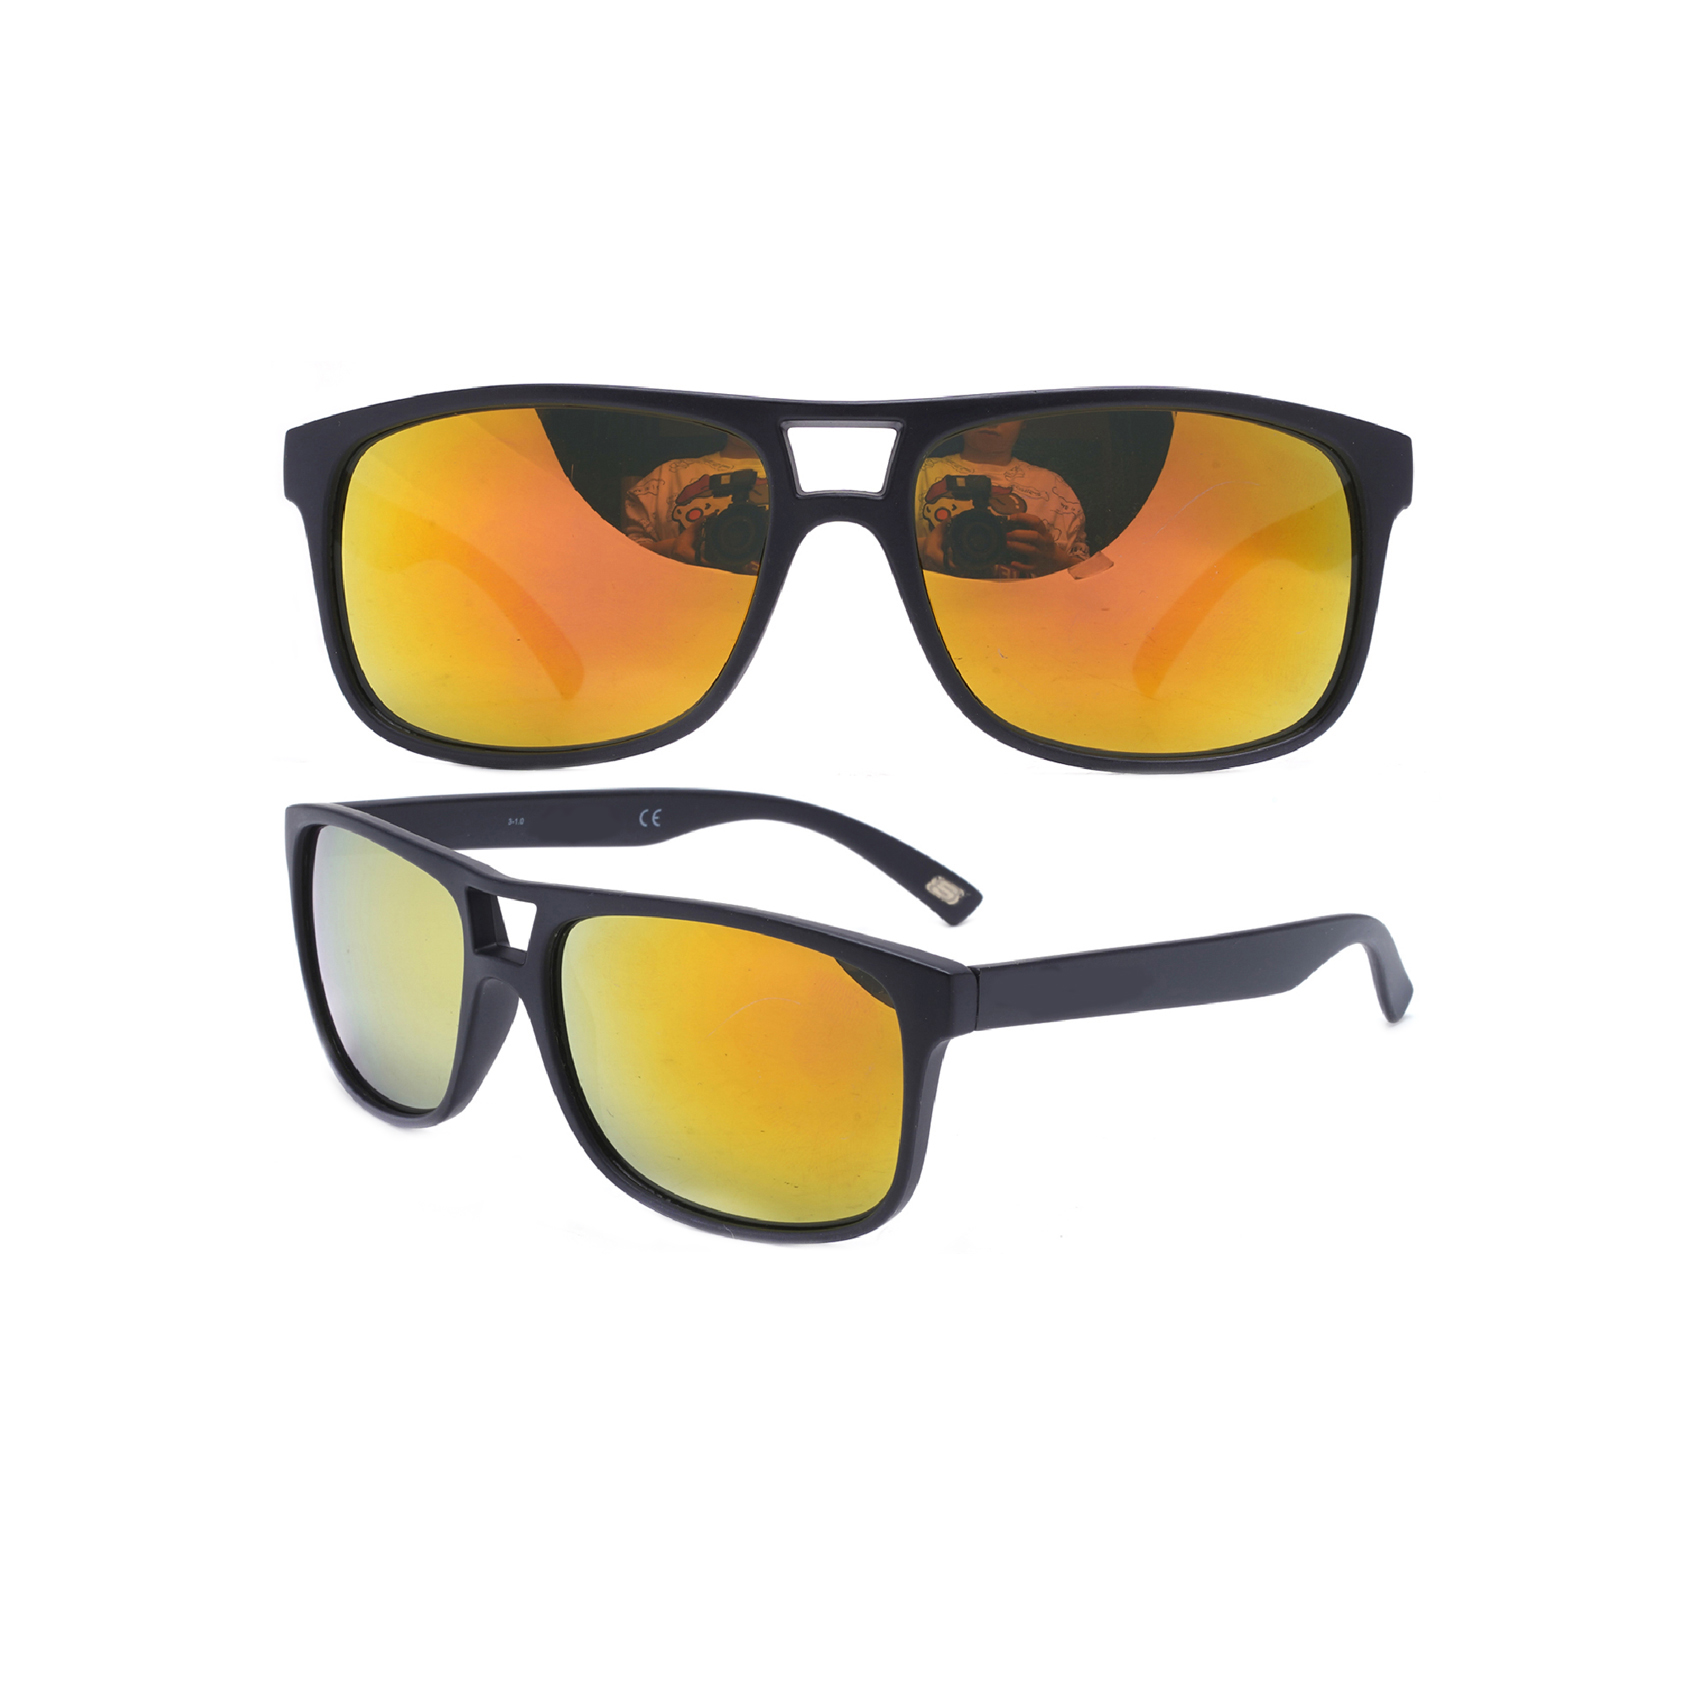 Stylish Aviator Sports Sunglasses Wholesale Aviator Sport Sunglasses Manufacturer